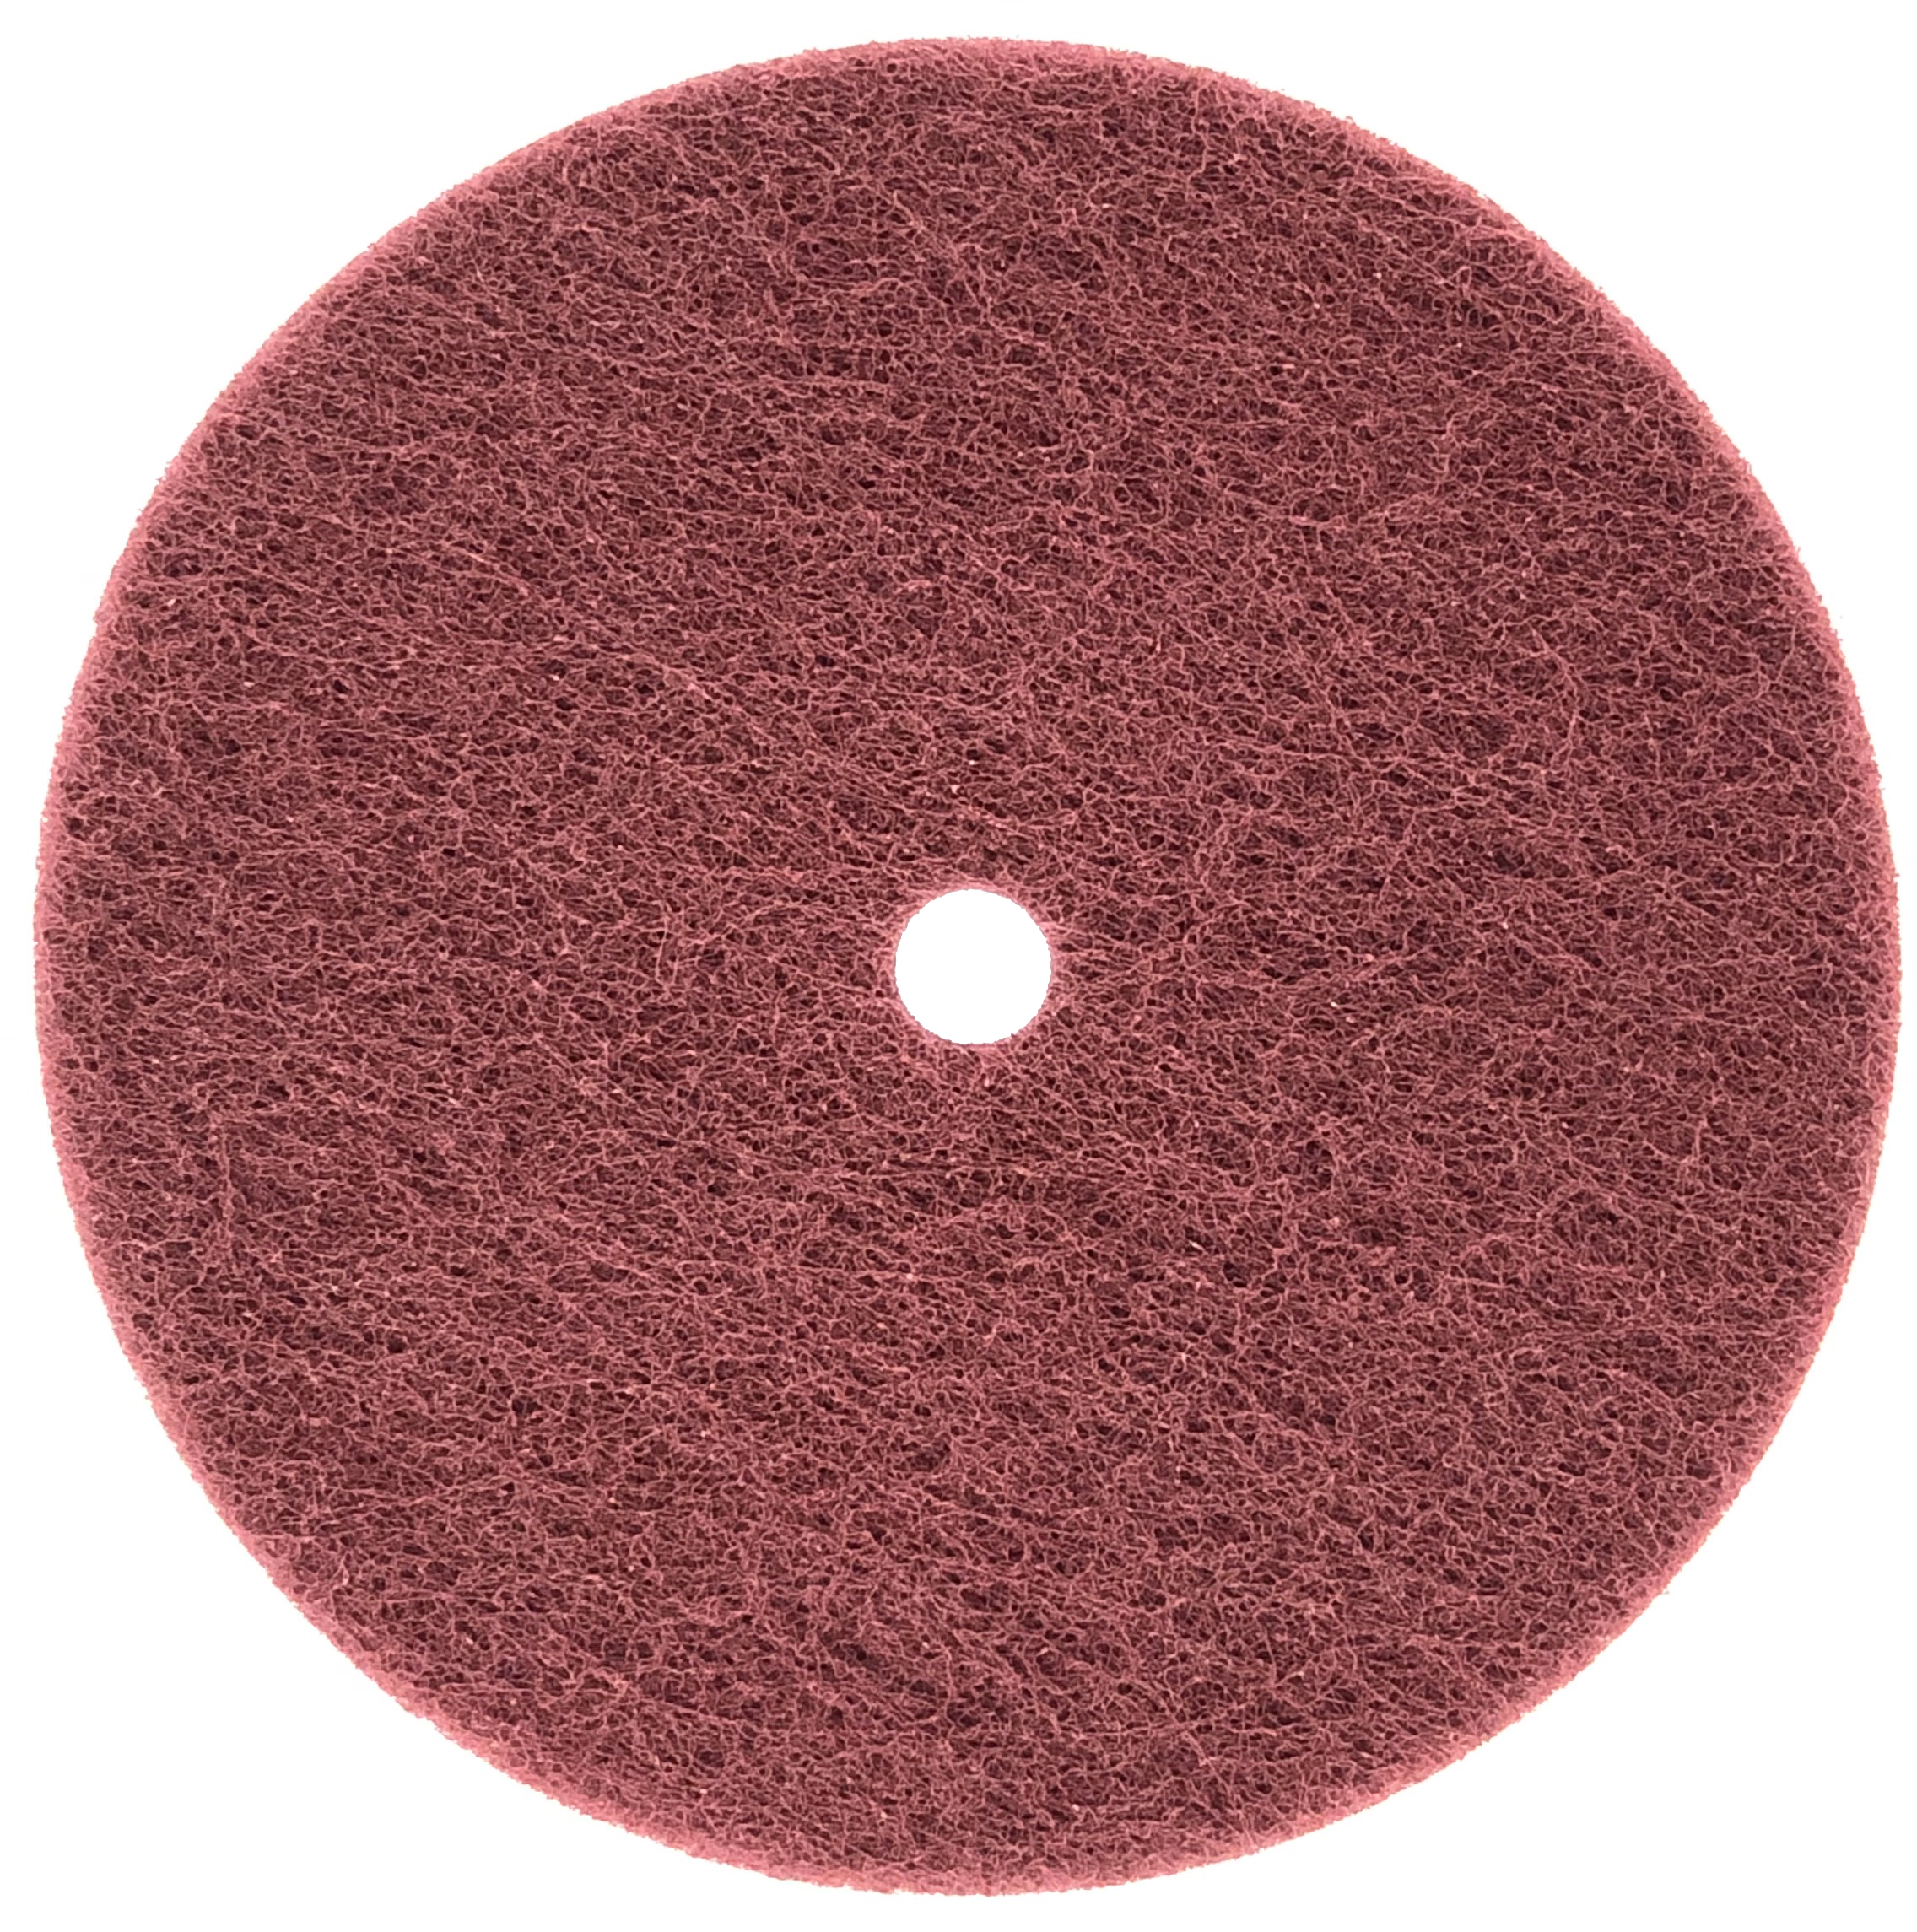 SAND LT. DISC W/HOLE 6x1/2 MED - Arbor Hole Discs